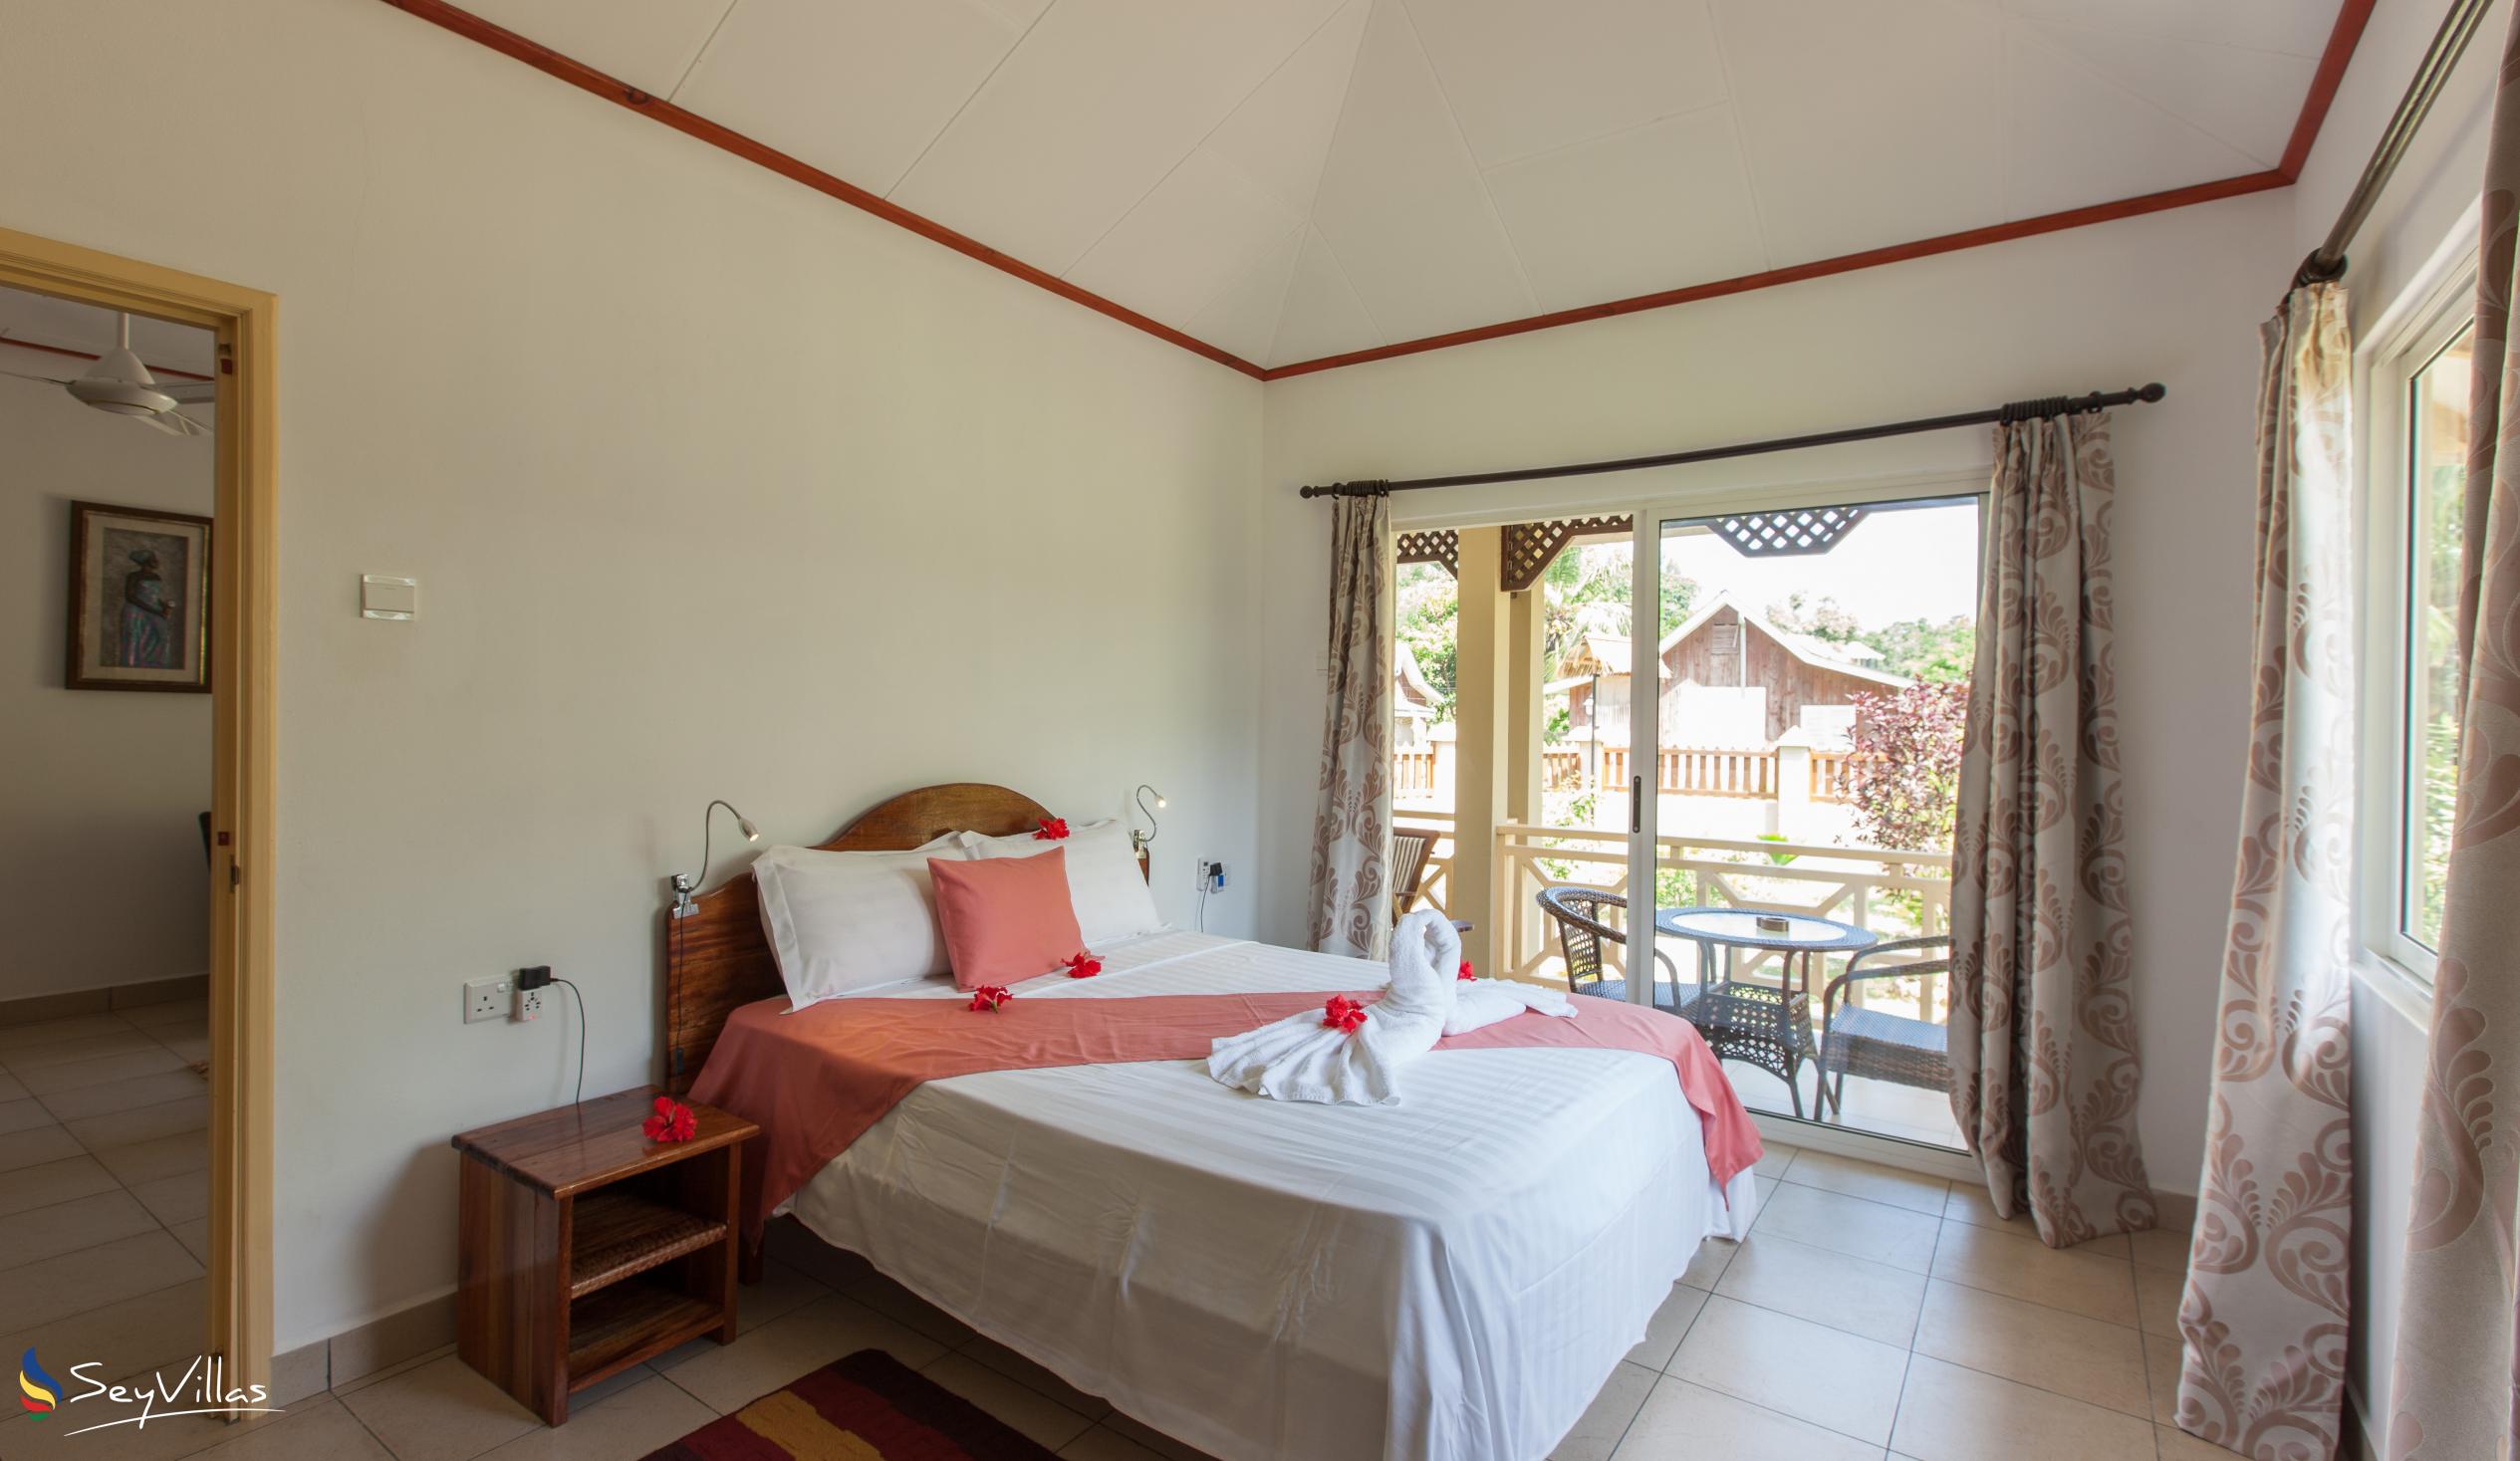 Photo 49: Hostellerie La Digue - 2-Bedroom Chalet - La Digue (Seychelles)